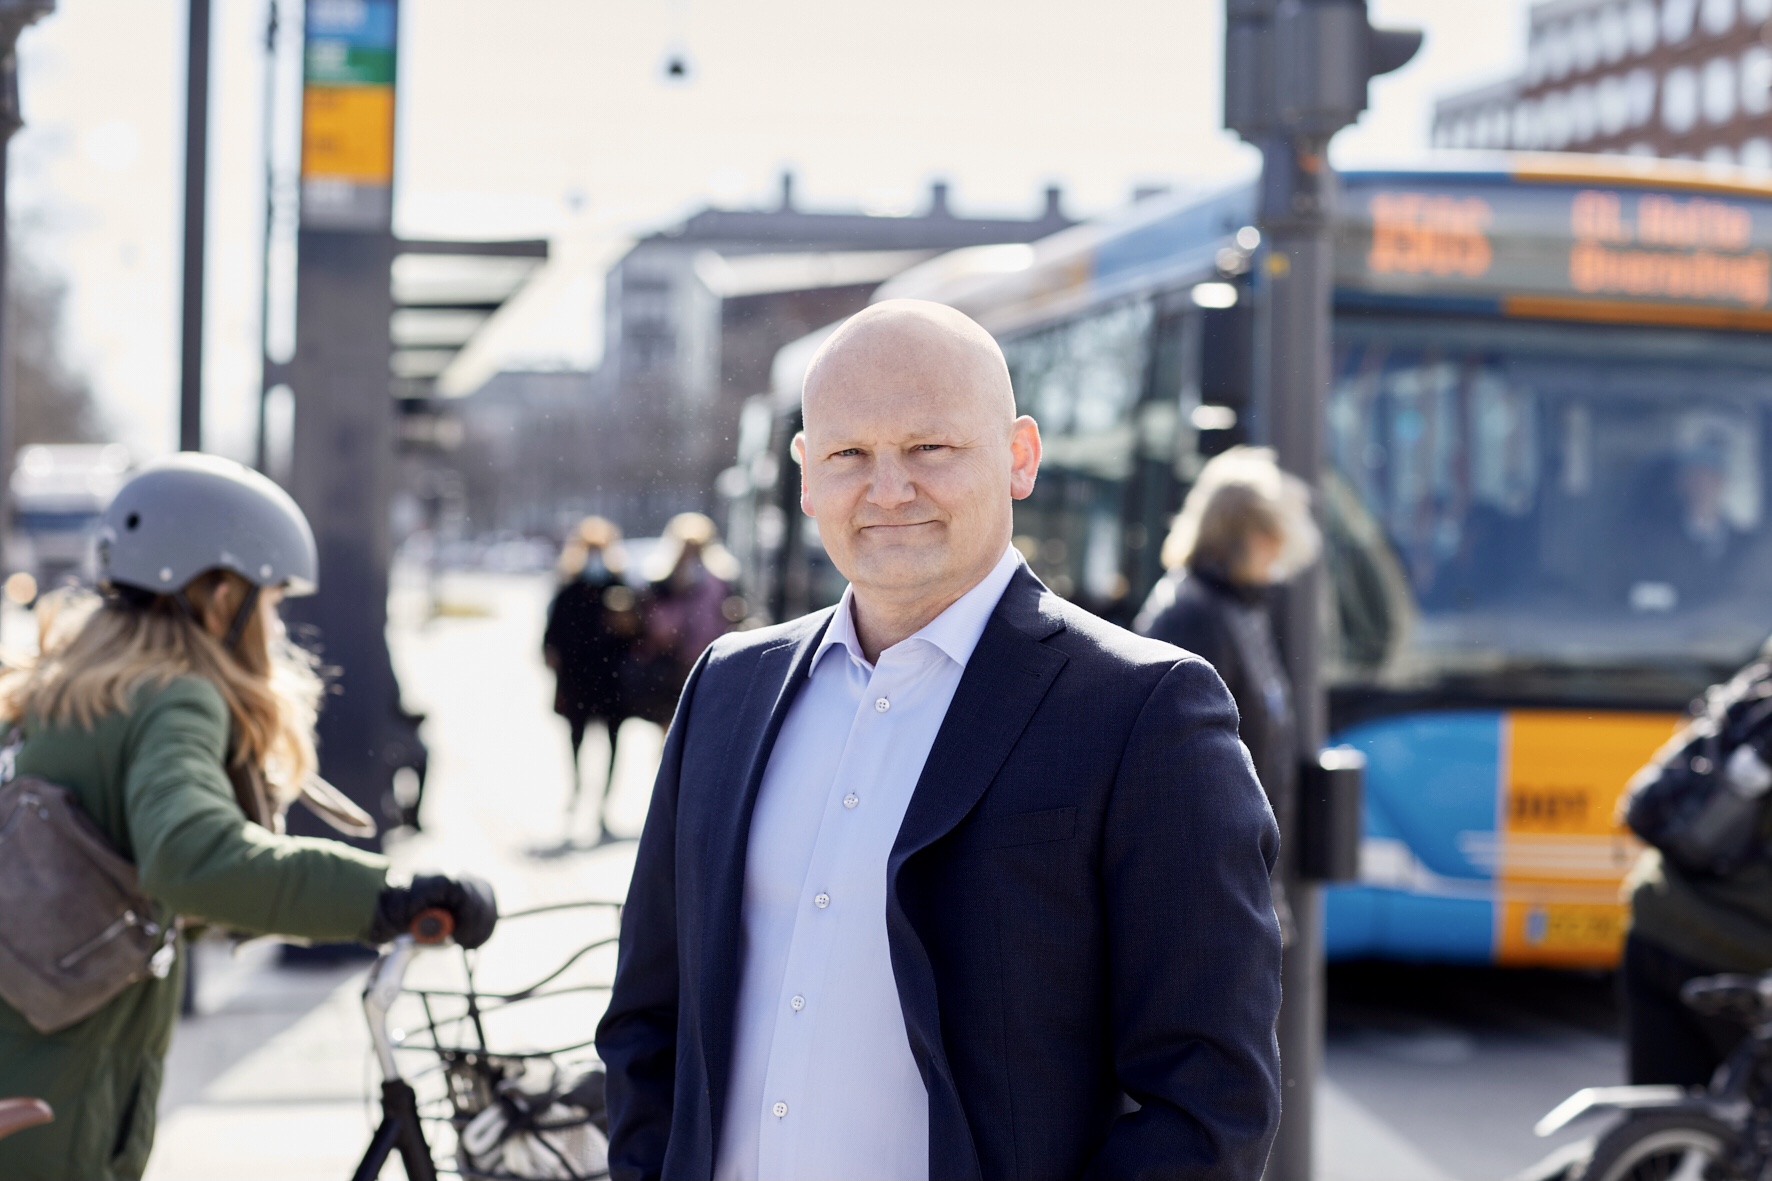 Regionsrådsformand Lars Gaardhøj om uligheden i sundhed: “De studerende kan løfte vanetænkningens tunge dyne”